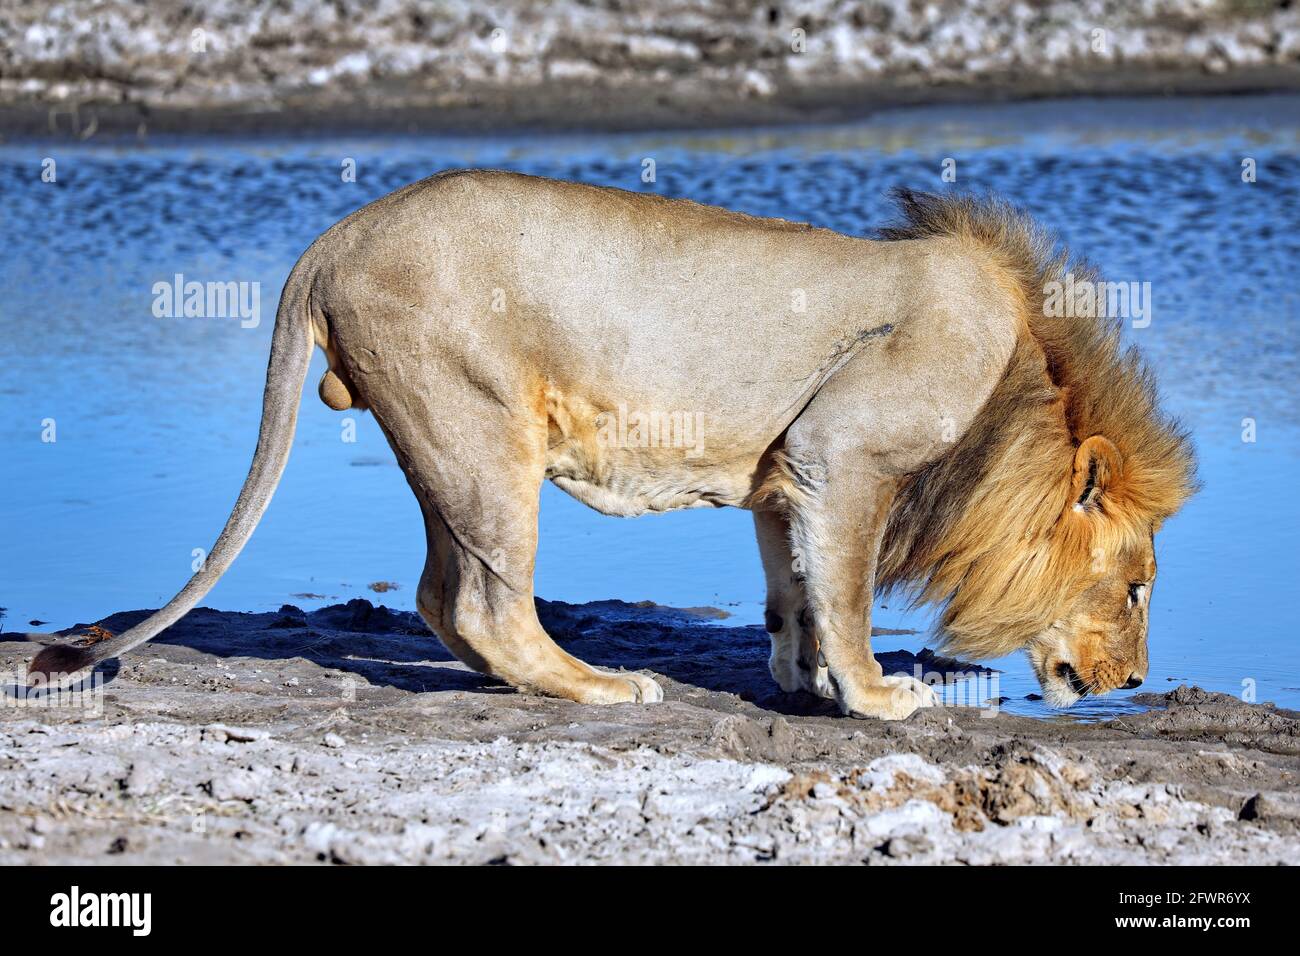 Drinking lion in the morning light, Etosha National Park, Namibia Stock Photo